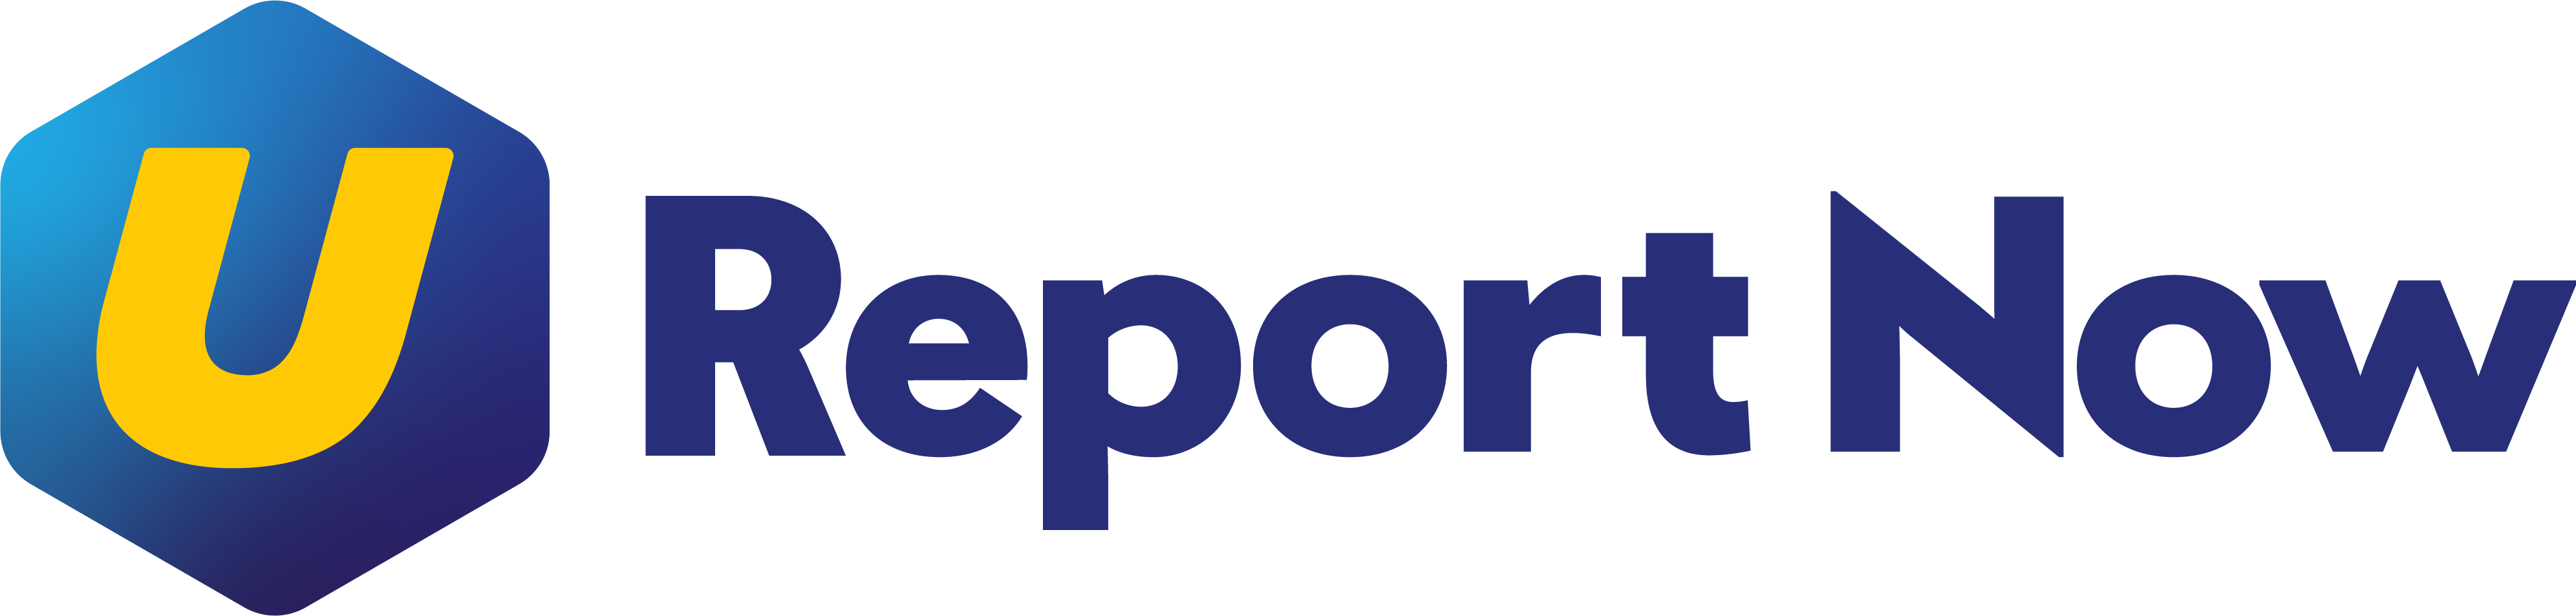 UReportNow_LogoFull_LR